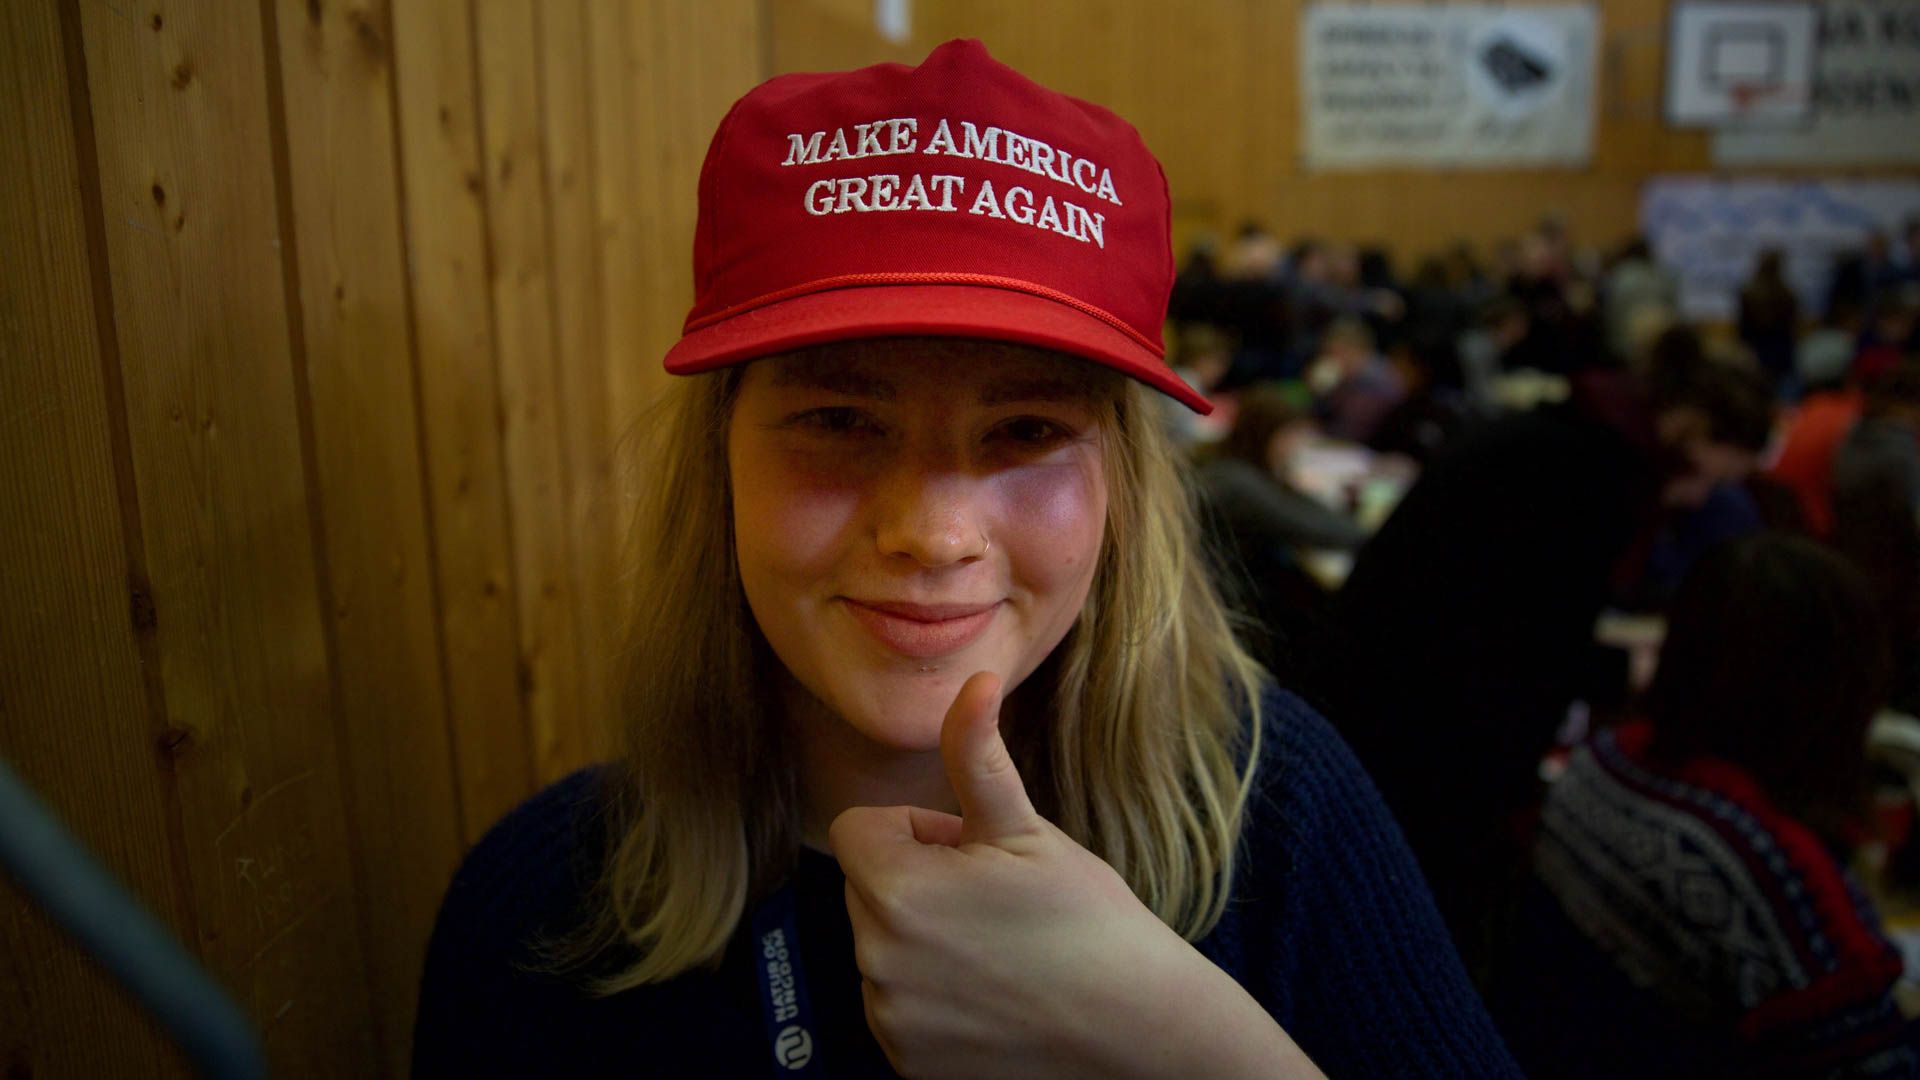 Denne capsen gikk på rundgang i løpet av landsmøtet. Og fra denne gjengen har nok «great» en litt annen betydning enn for Donald Trump. (Foto: Anne Dorte Lunås, NRK)